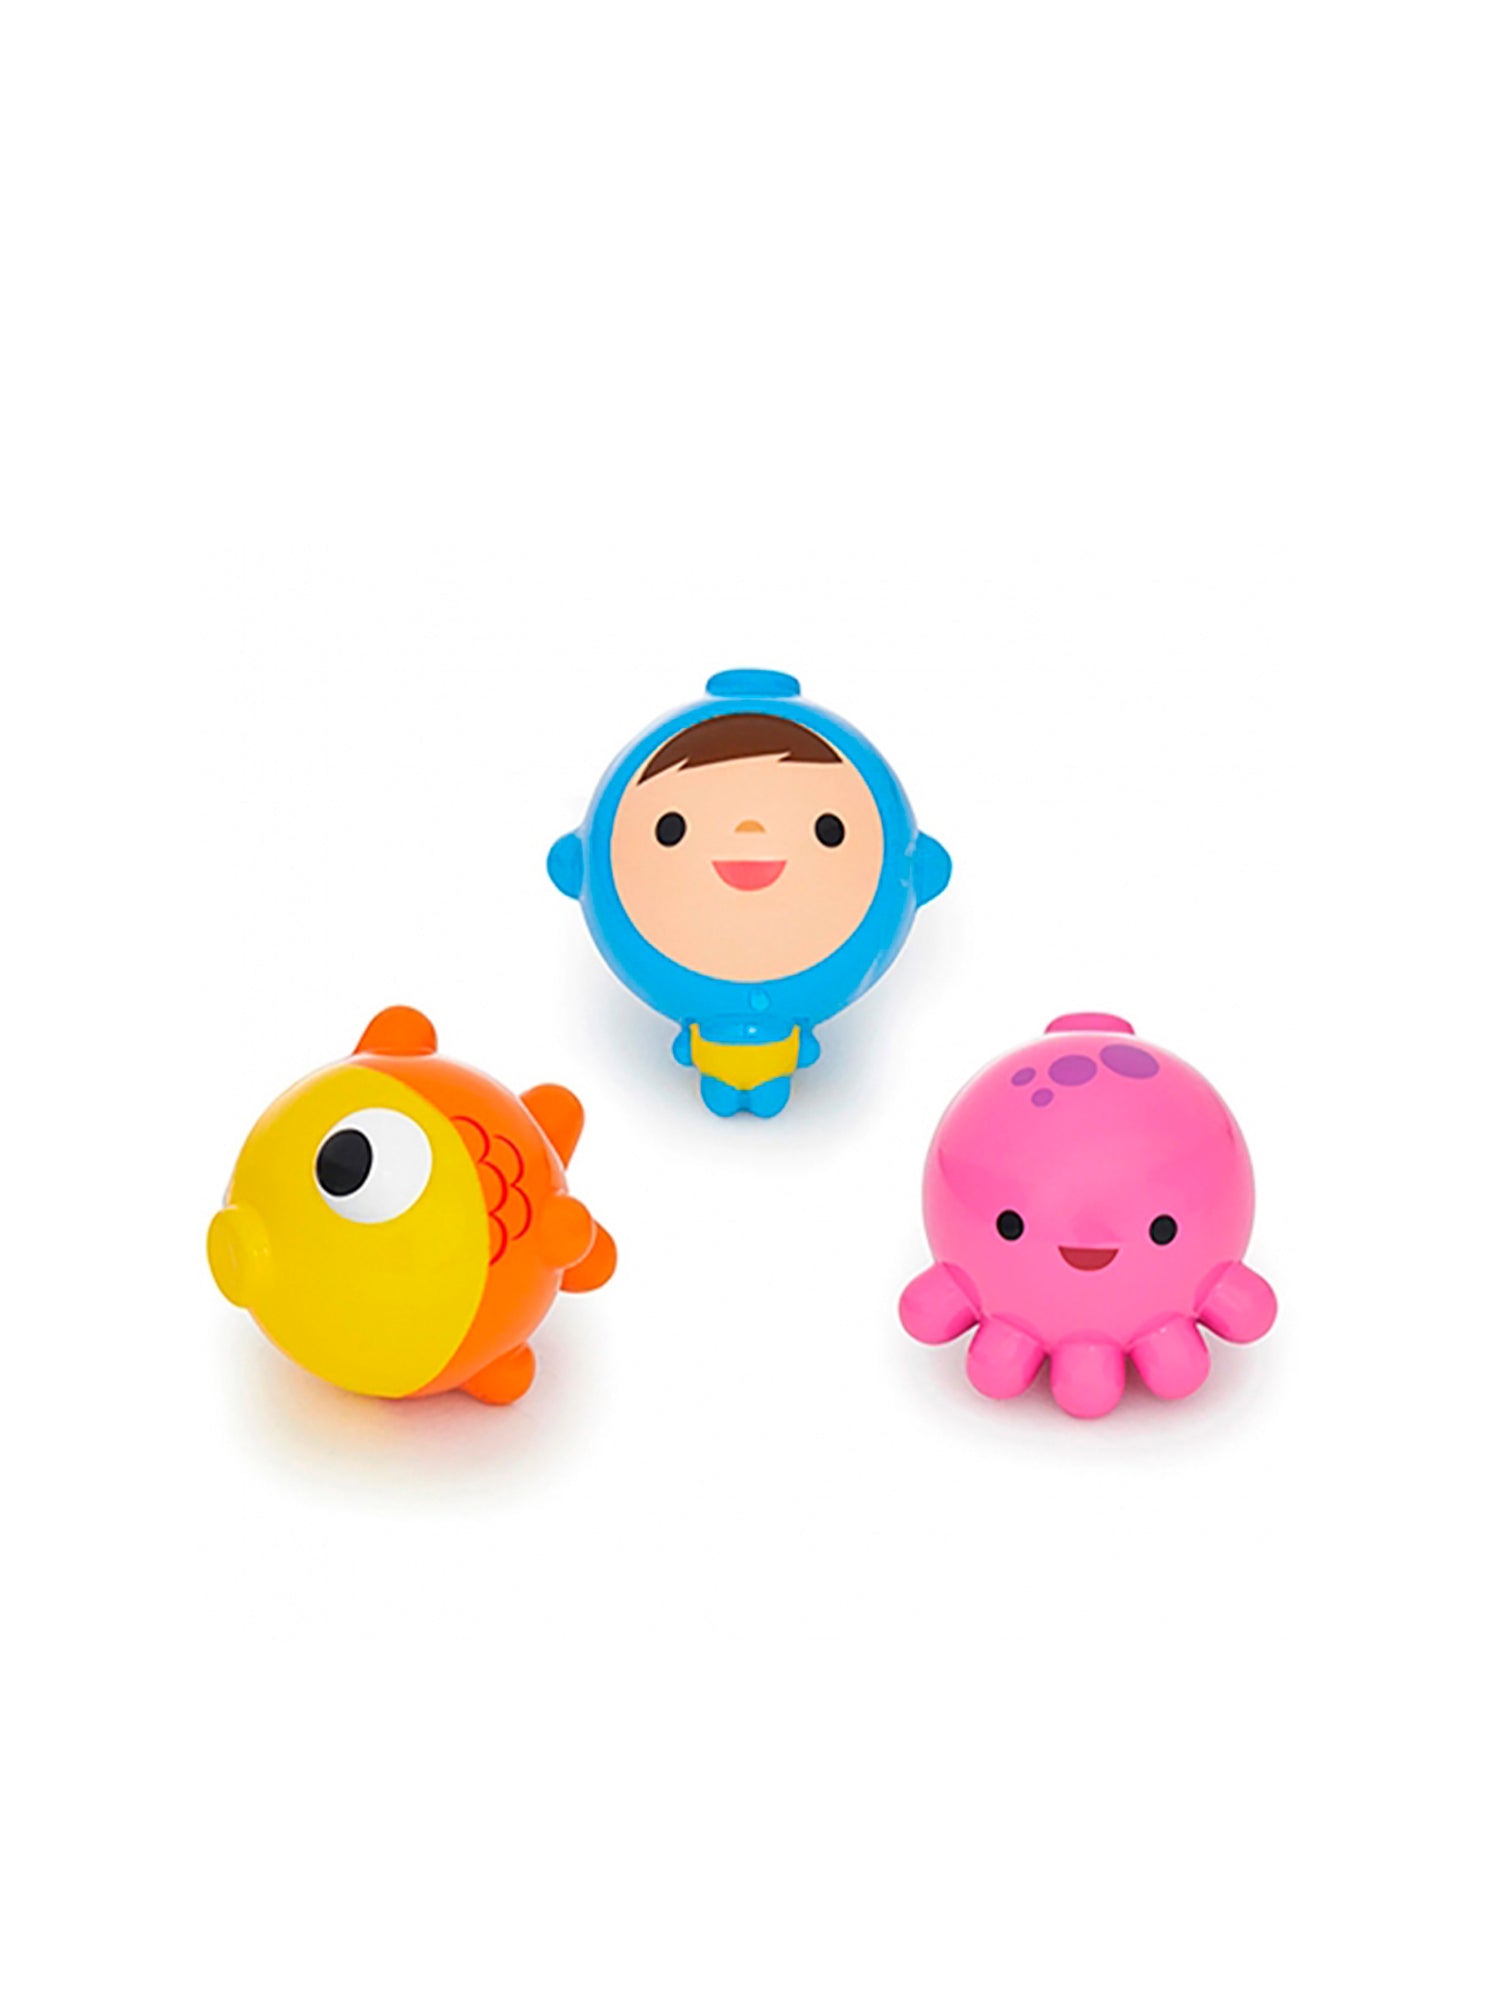 Munchkin - Fishin Bath Toy